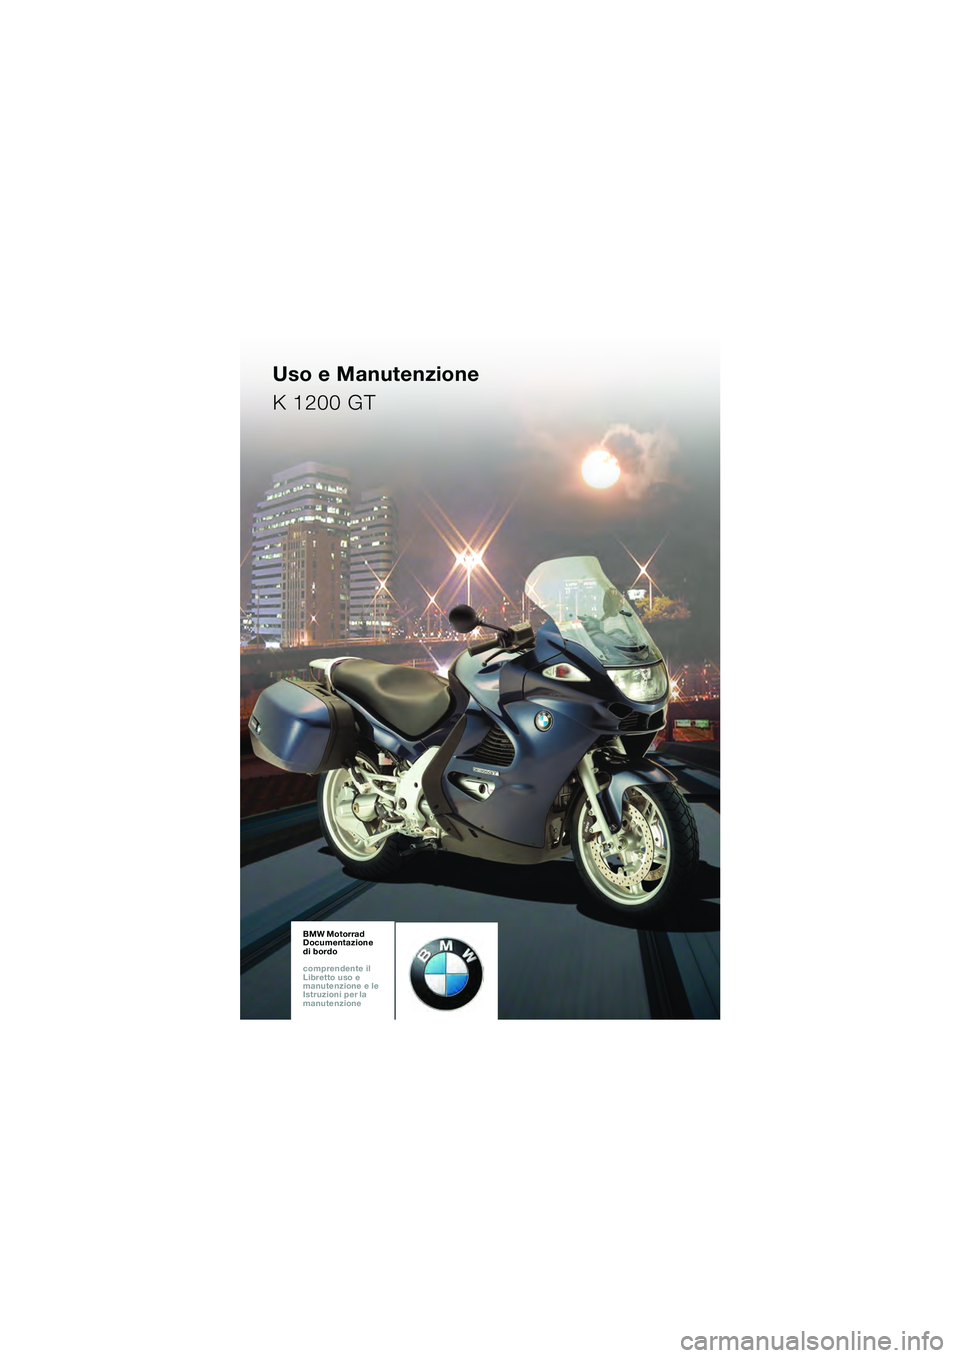 BMW MOTORRAD K 1200 GT 2002  Libretto di uso e manutenzione (in Italian) BMW Motorrad
Documentazione  
di bordo
comprendente il  
Libretto uso e  
manutenzione e le  
Istruzioni per la  
manutenzioneBMW Motorrad
Documentazione  
di bordo
comprendente il  
Libretto uso e  
